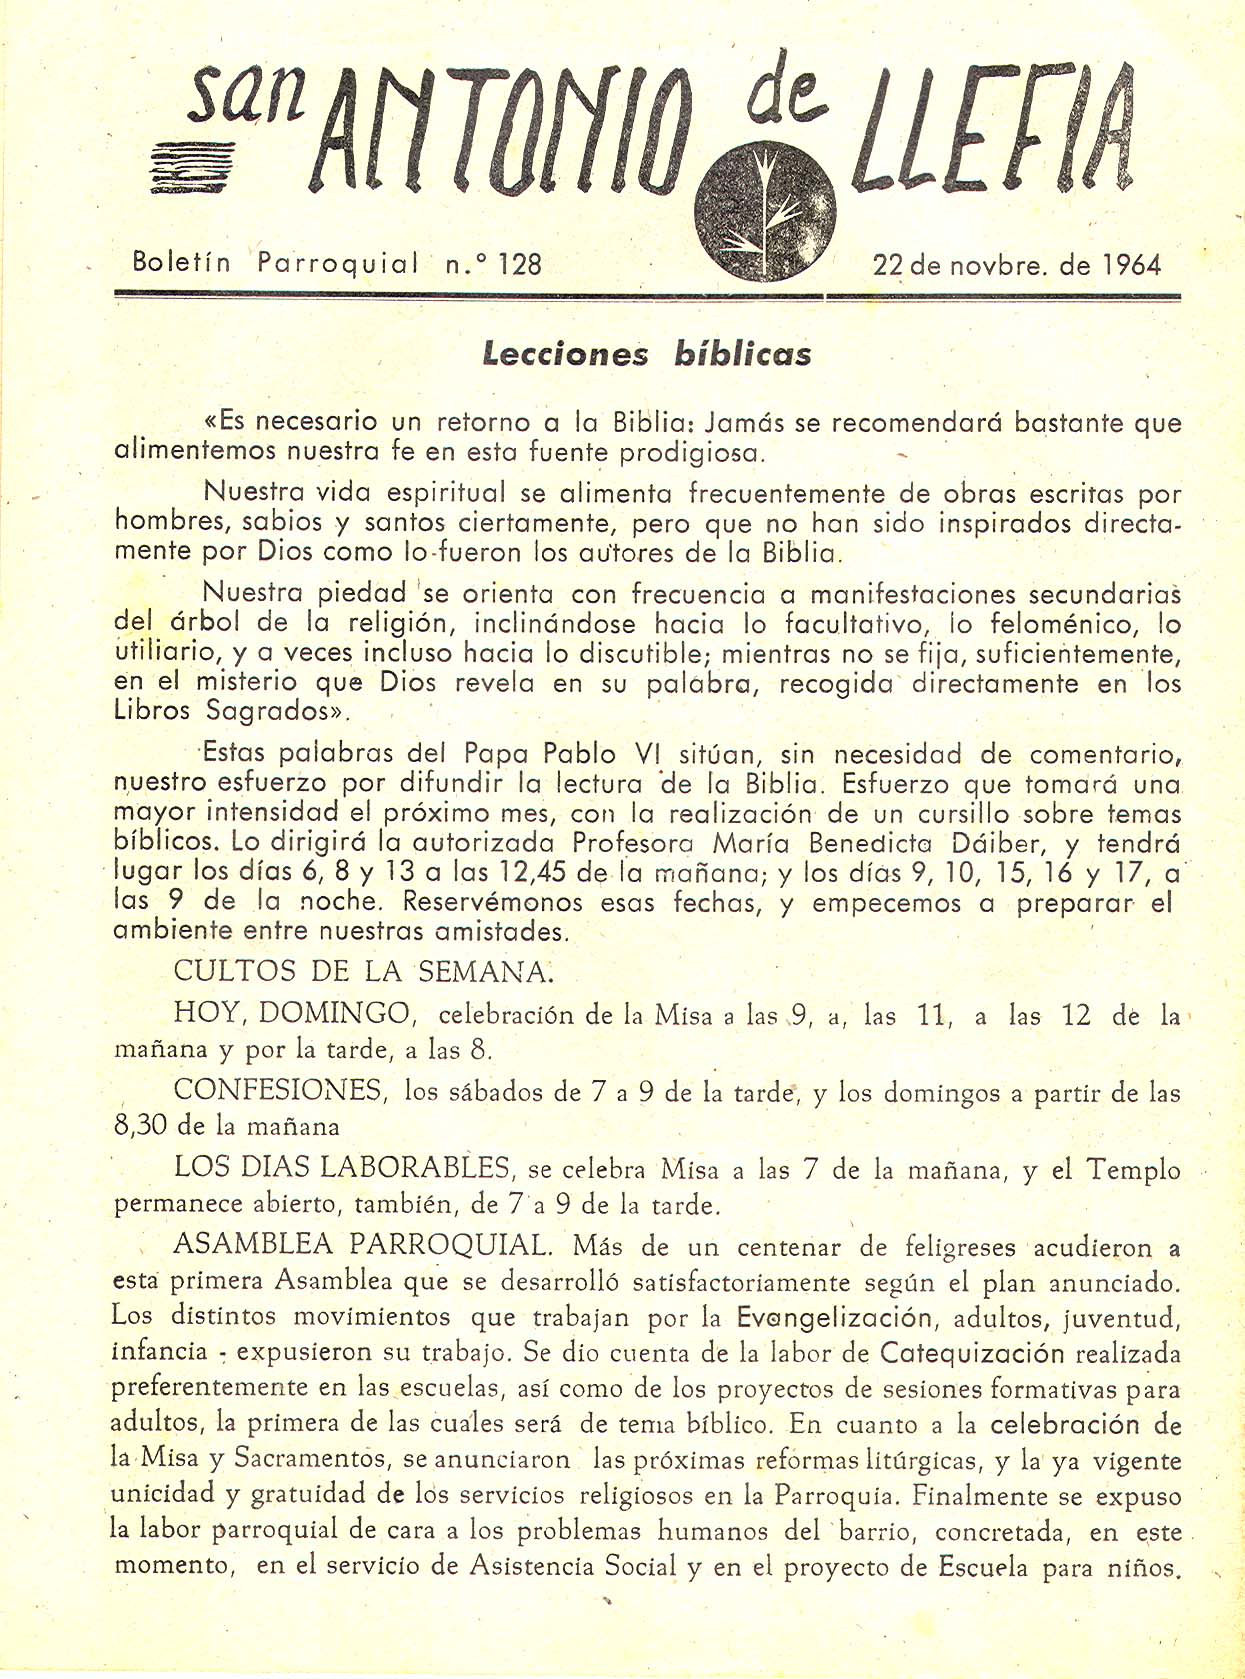 1964 Boletin parroquial nÃºm 128